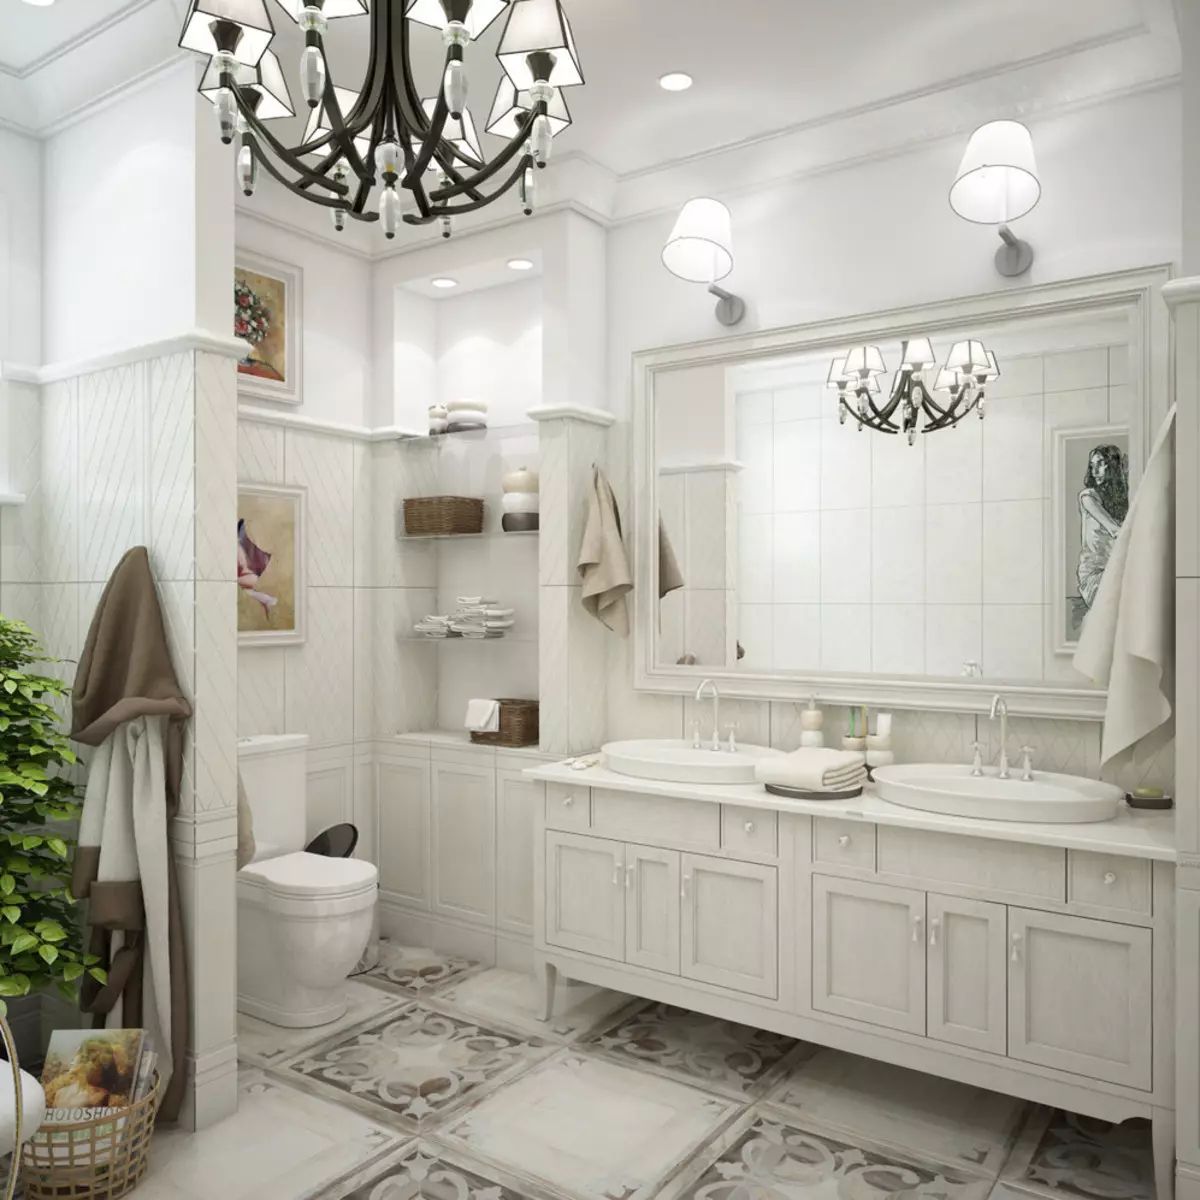 Salle de bain blanche (84 photos): design de chambre dans des tons blancs avec des accents lumineux. Idées de design d'intérieur modernes Petite salle de bain blanche avec inserts 10191_16